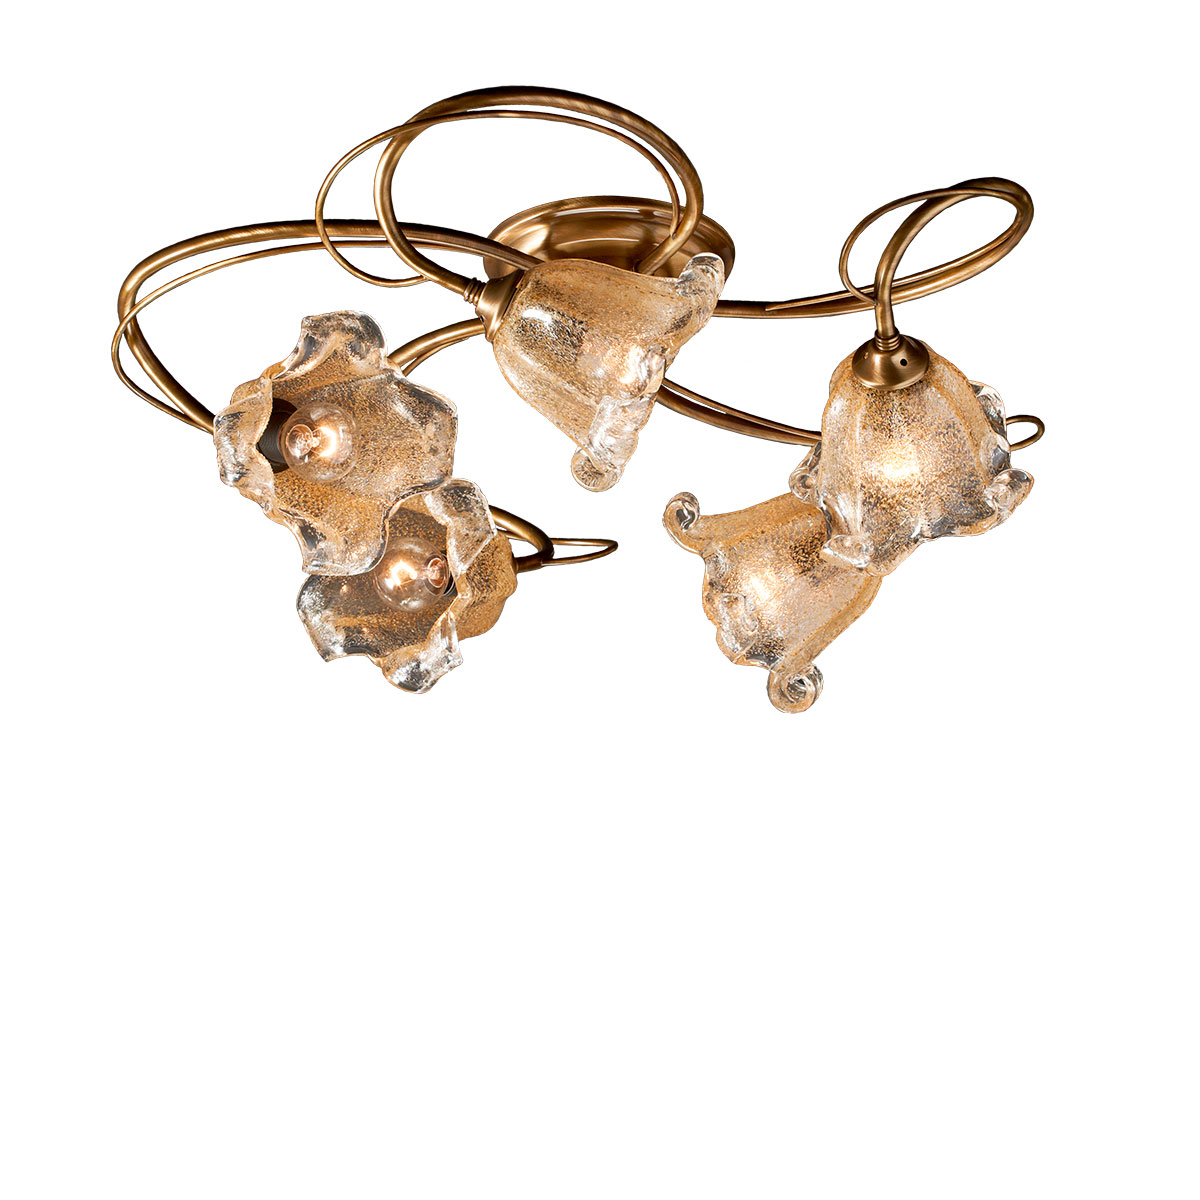 Φωτιστικό οροφής με κρύσταλλα Murano ΝΥΜΦΑΙΟ classic 5-bulb ceiling lamp with Murano crystals